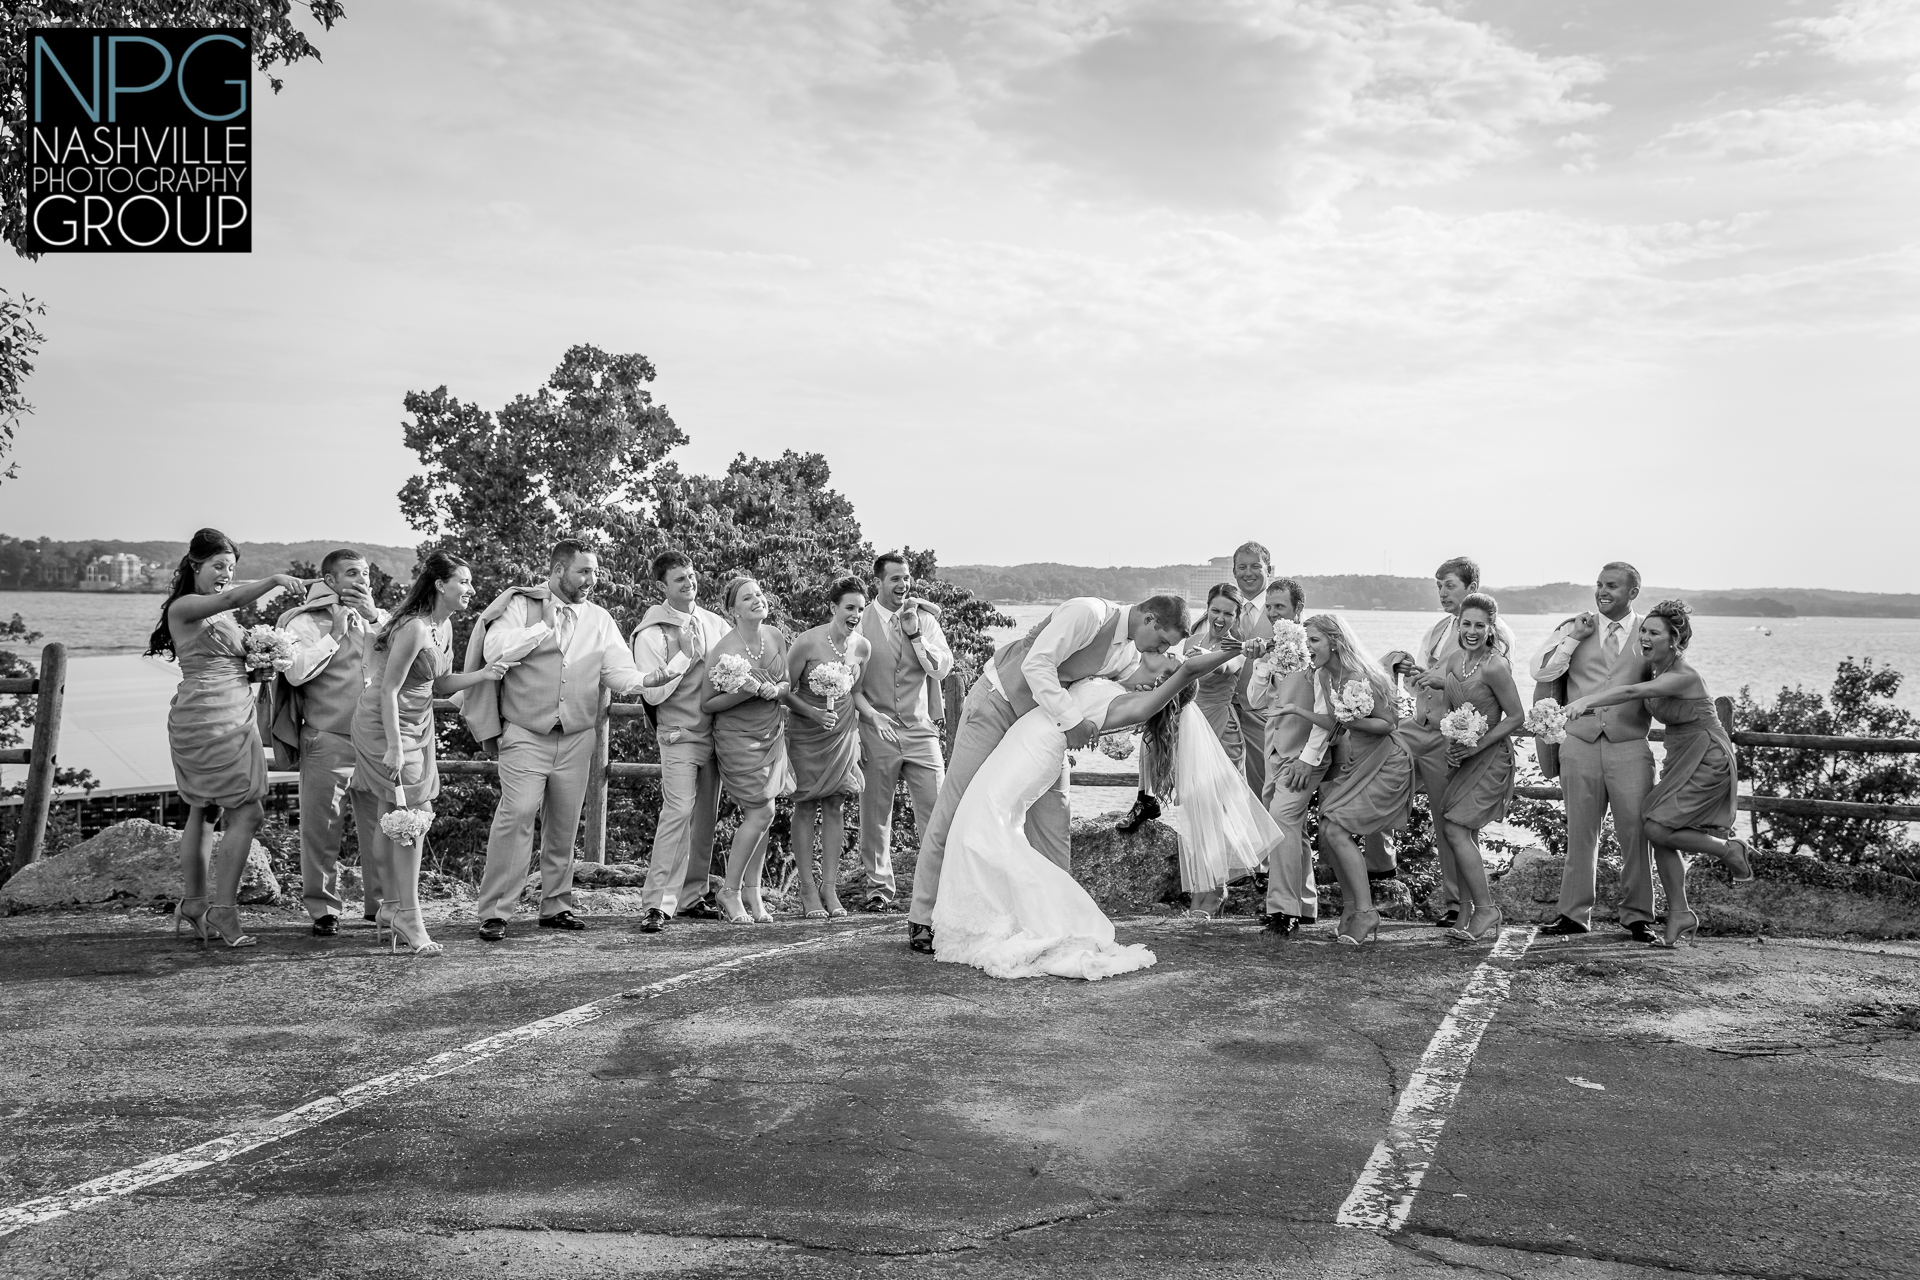 Nashville Photography Group wedding photographers-13-2.jpg